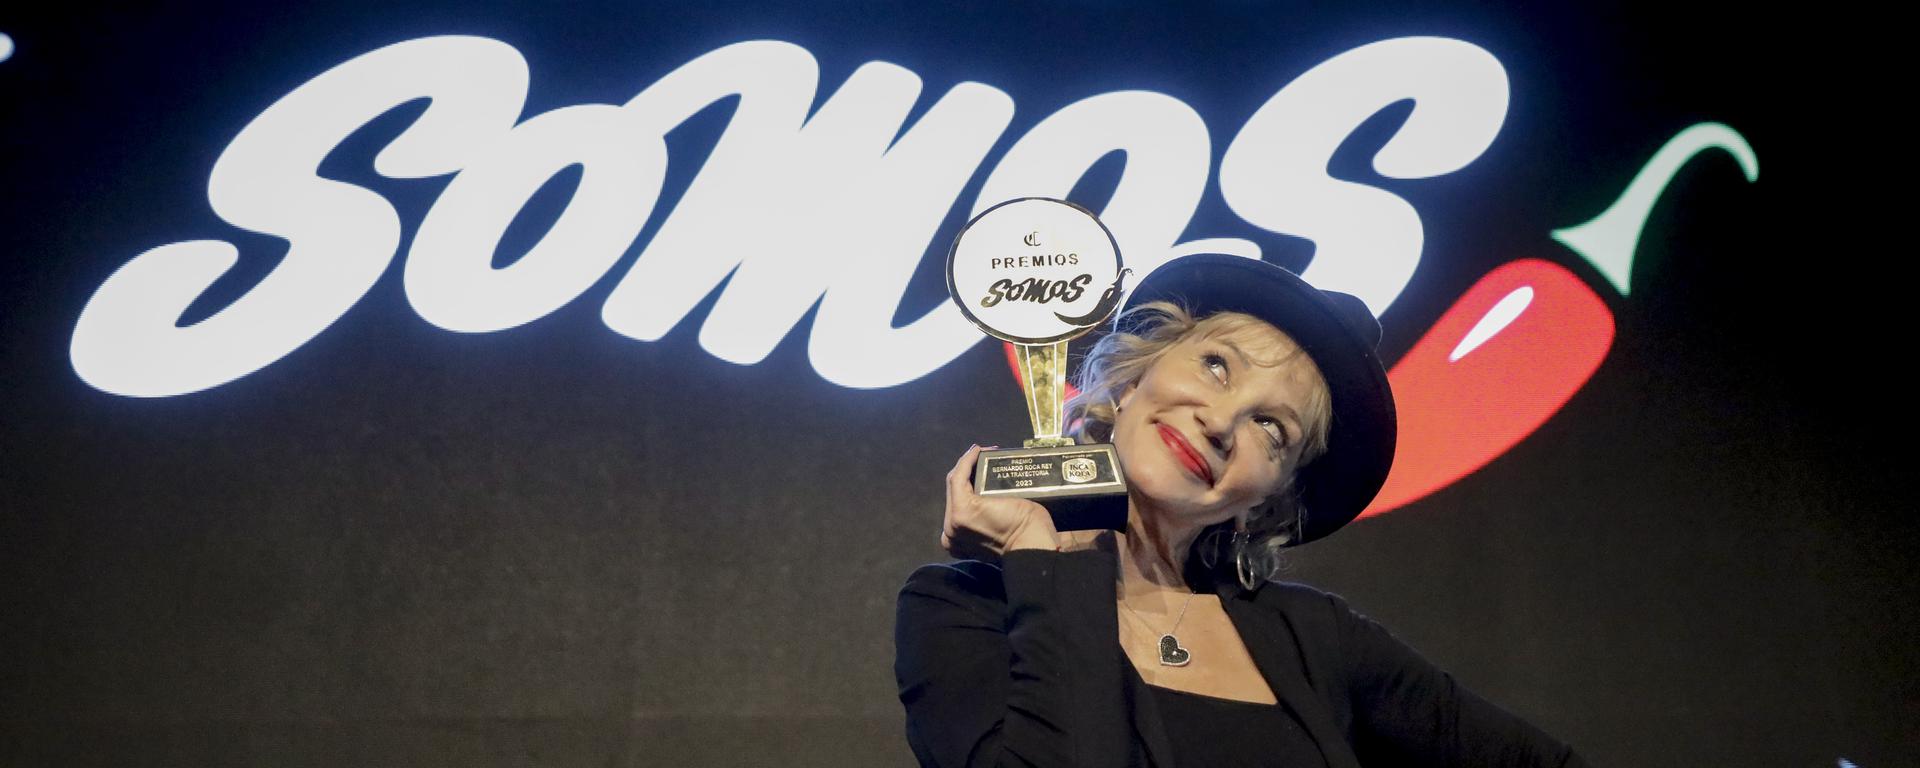 Los Premios Somos vuelven: conoce las novedades en el ranking culinario elegido por votación del público